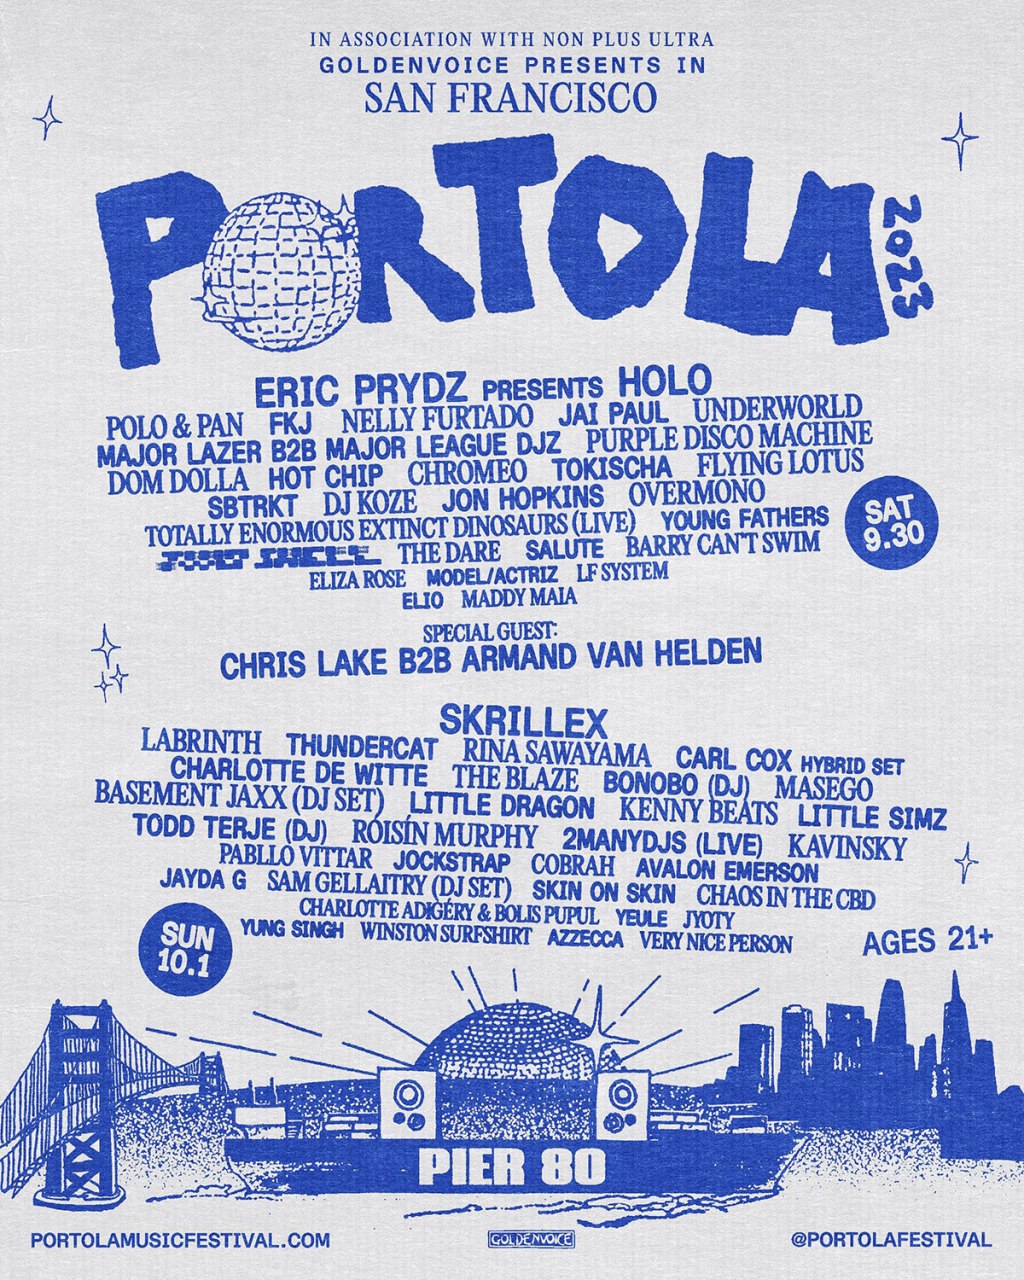 Portola Music Festival: A New Festival for the Bay Area